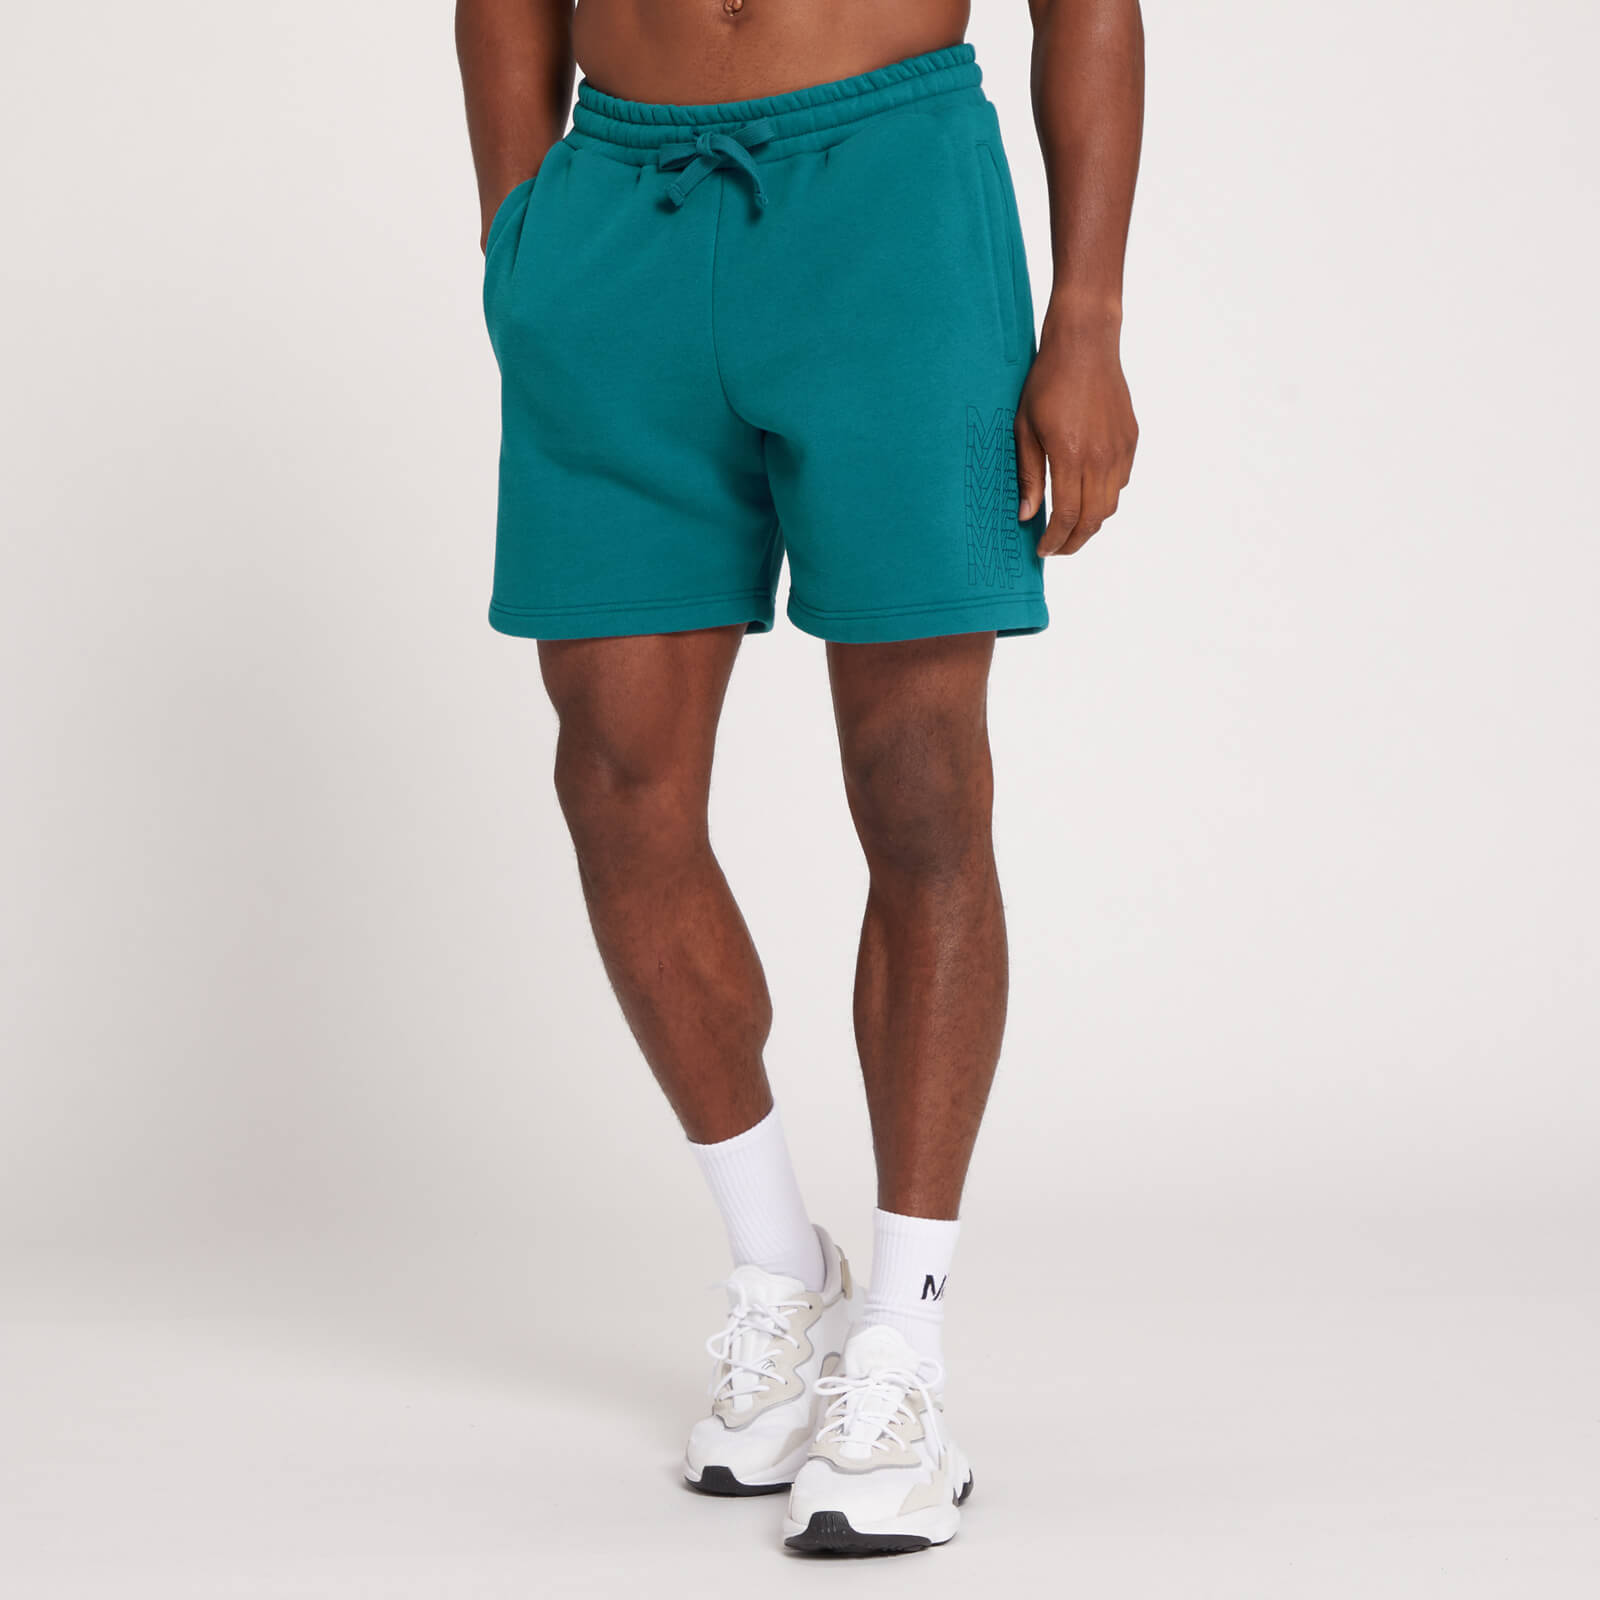 Pantalón corto con detalle gráfico de MP repetido para hombre de MP - Verde azulado oscuro - XS